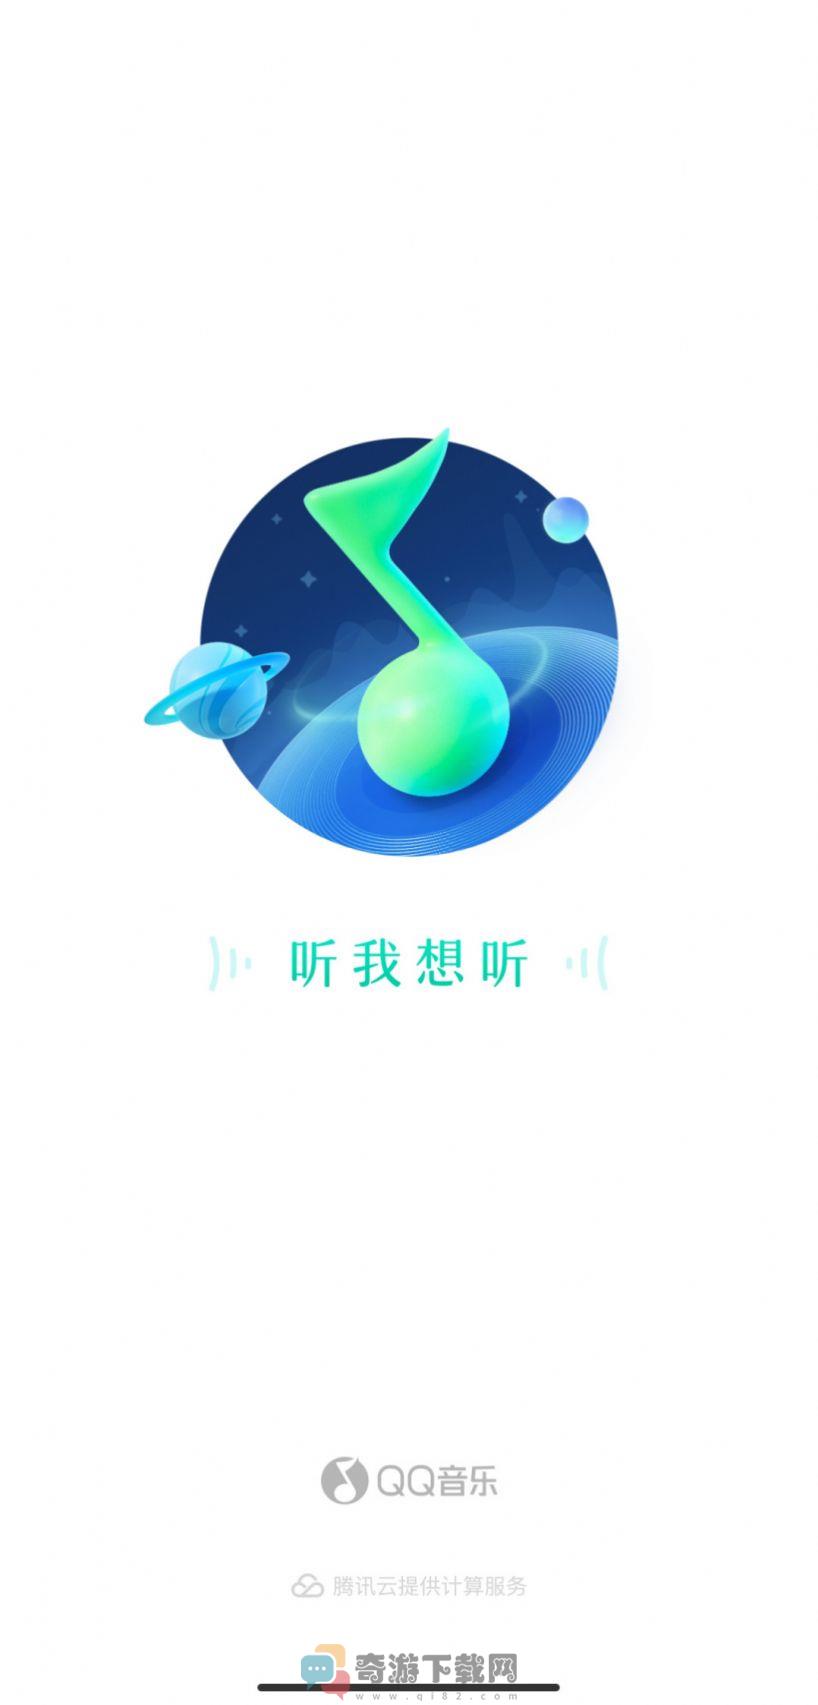 腾讯QQ音乐安卓版11.5内测版图片1